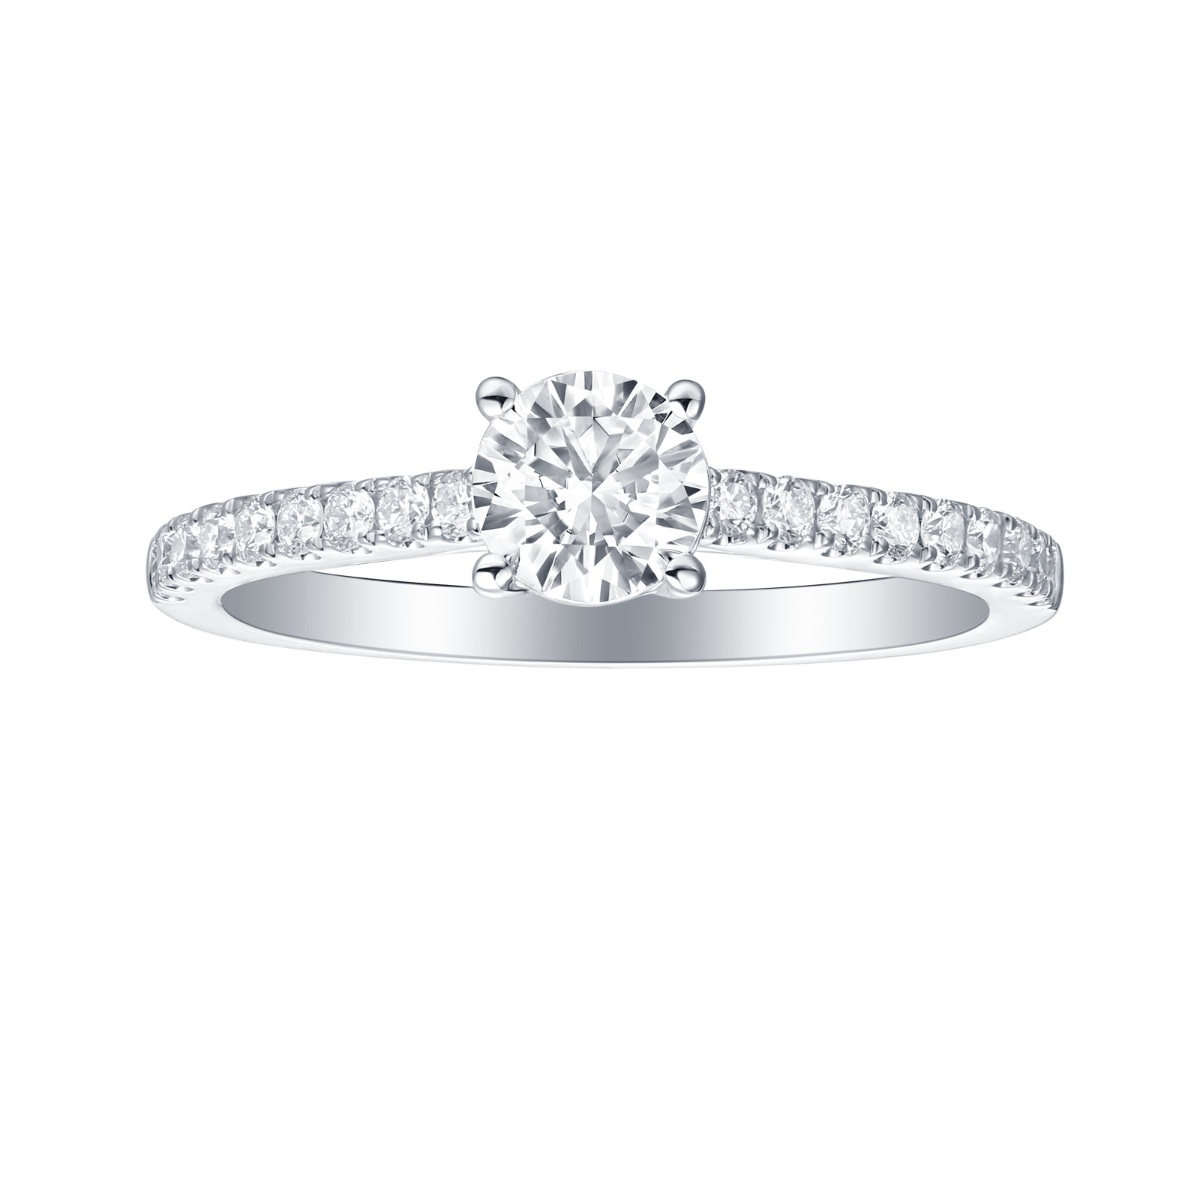 R35874WHT – 18K White Gold Diamond Ring, 1.24 TCW